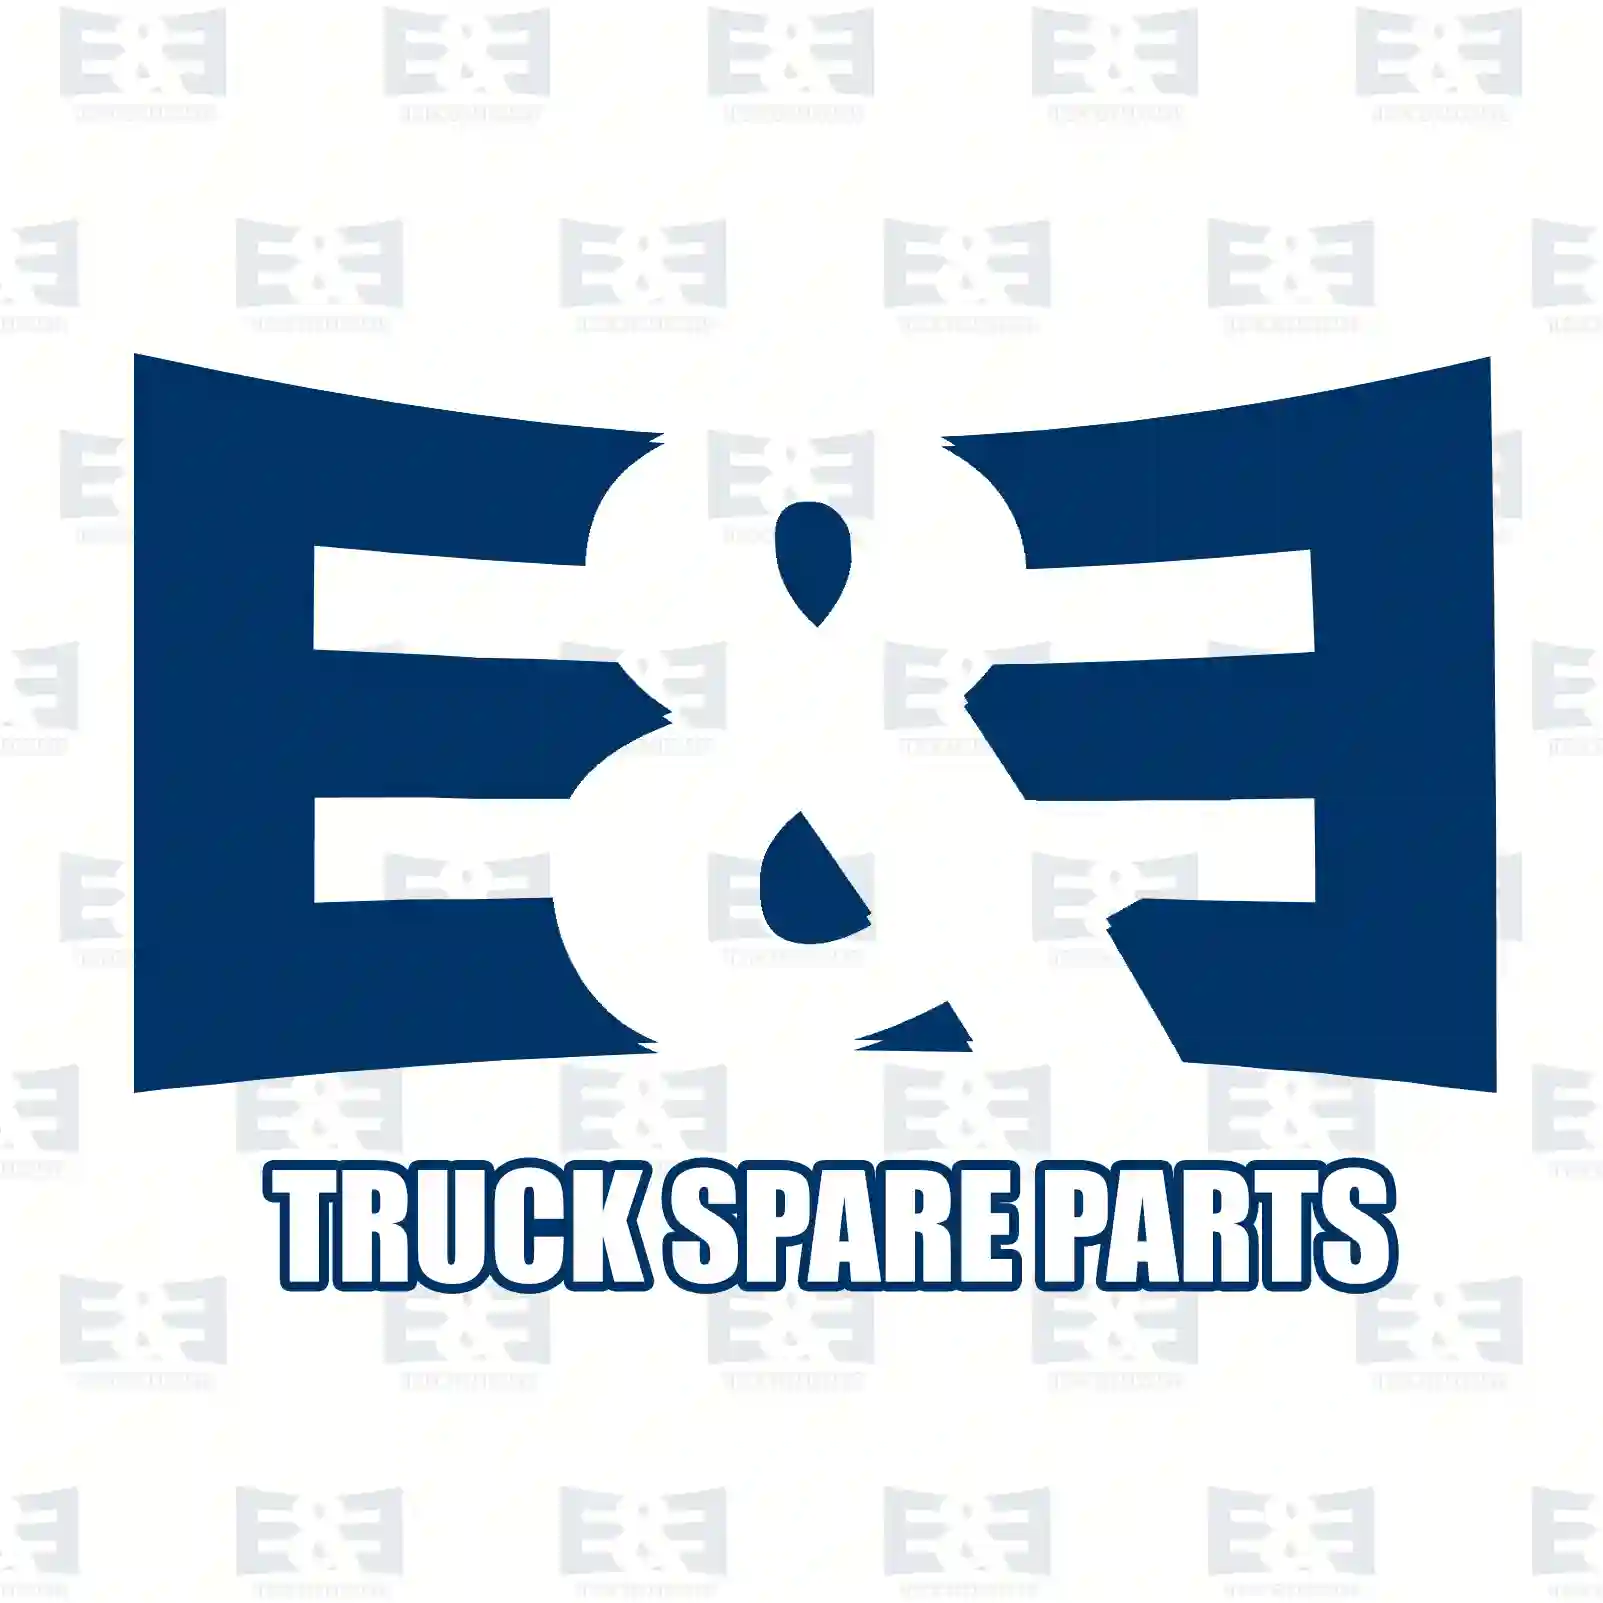 Turn signal lamp, right, 2E2298060, 9678201221, ZG21214-0008 ||  2E2298060 E&E Truck Spare Parts | Truck Spare Parts, Auotomotive Spare Parts Turn signal lamp, right, 2E2298060, 9678201221, ZG21214-0008 ||  2E2298060 E&E Truck Spare Parts | Truck Spare Parts, Auotomotive Spare Parts